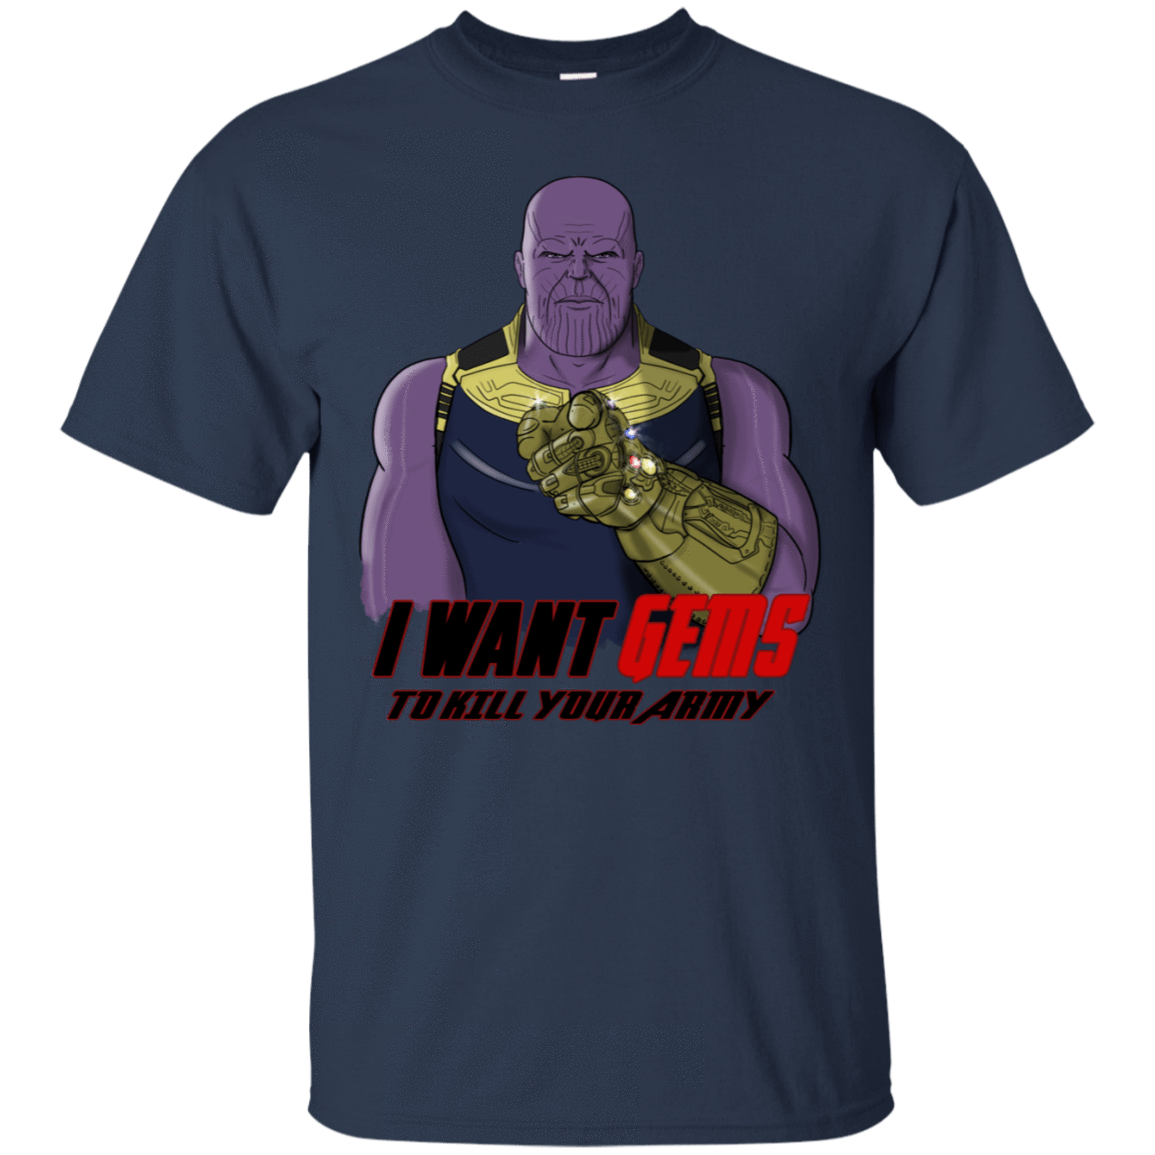 T-Shirts Navy / S Thanos Sam T-Shirt